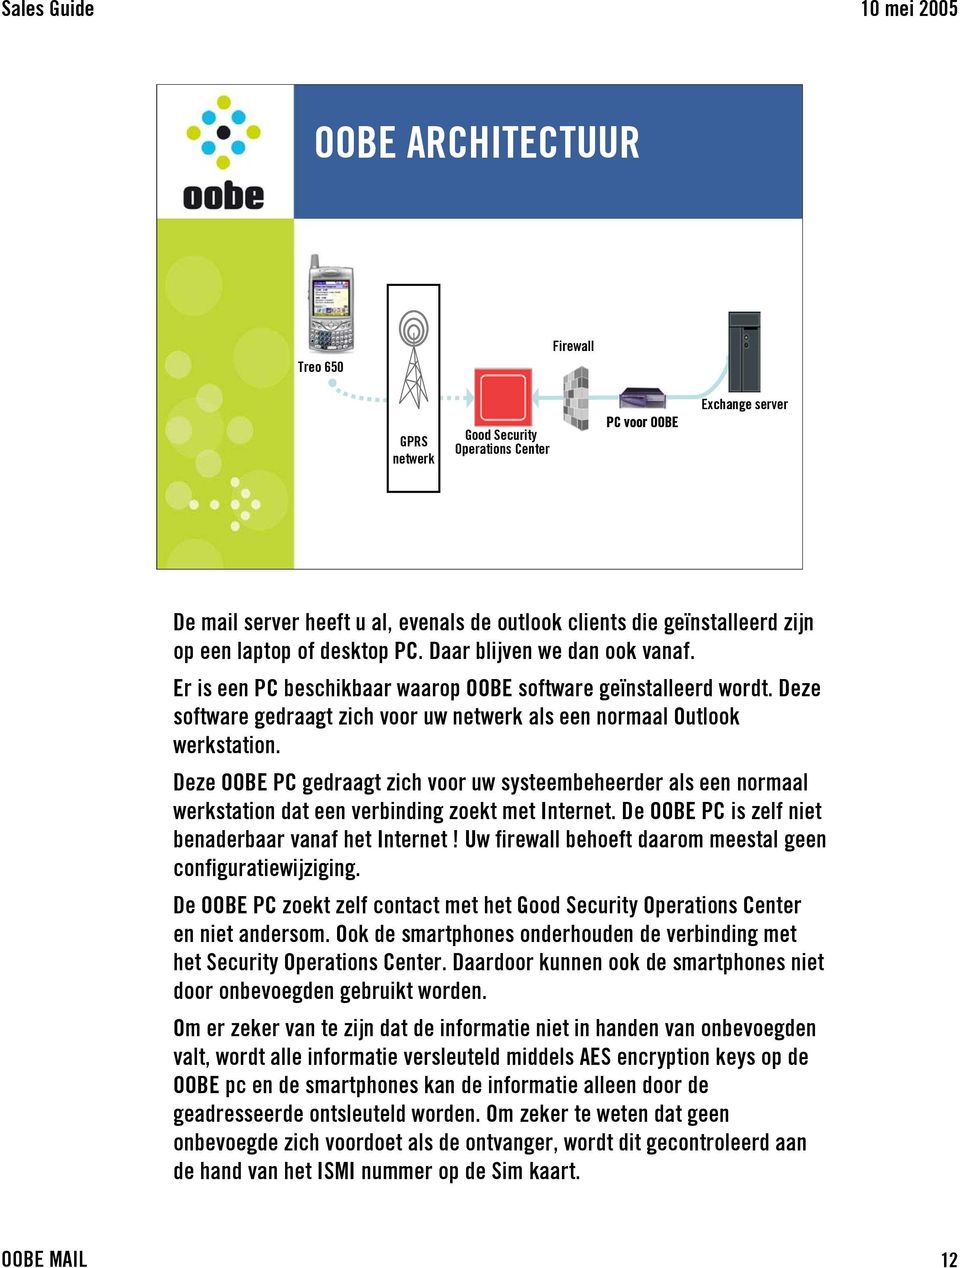 Deze OOBE PC gedraagt zich voor uw systeembeheerder als een normaal werkstation dat een verbinding zoekt met Internet. De OOBE PC is zelf niet benaderbaar vanaf het Internet!